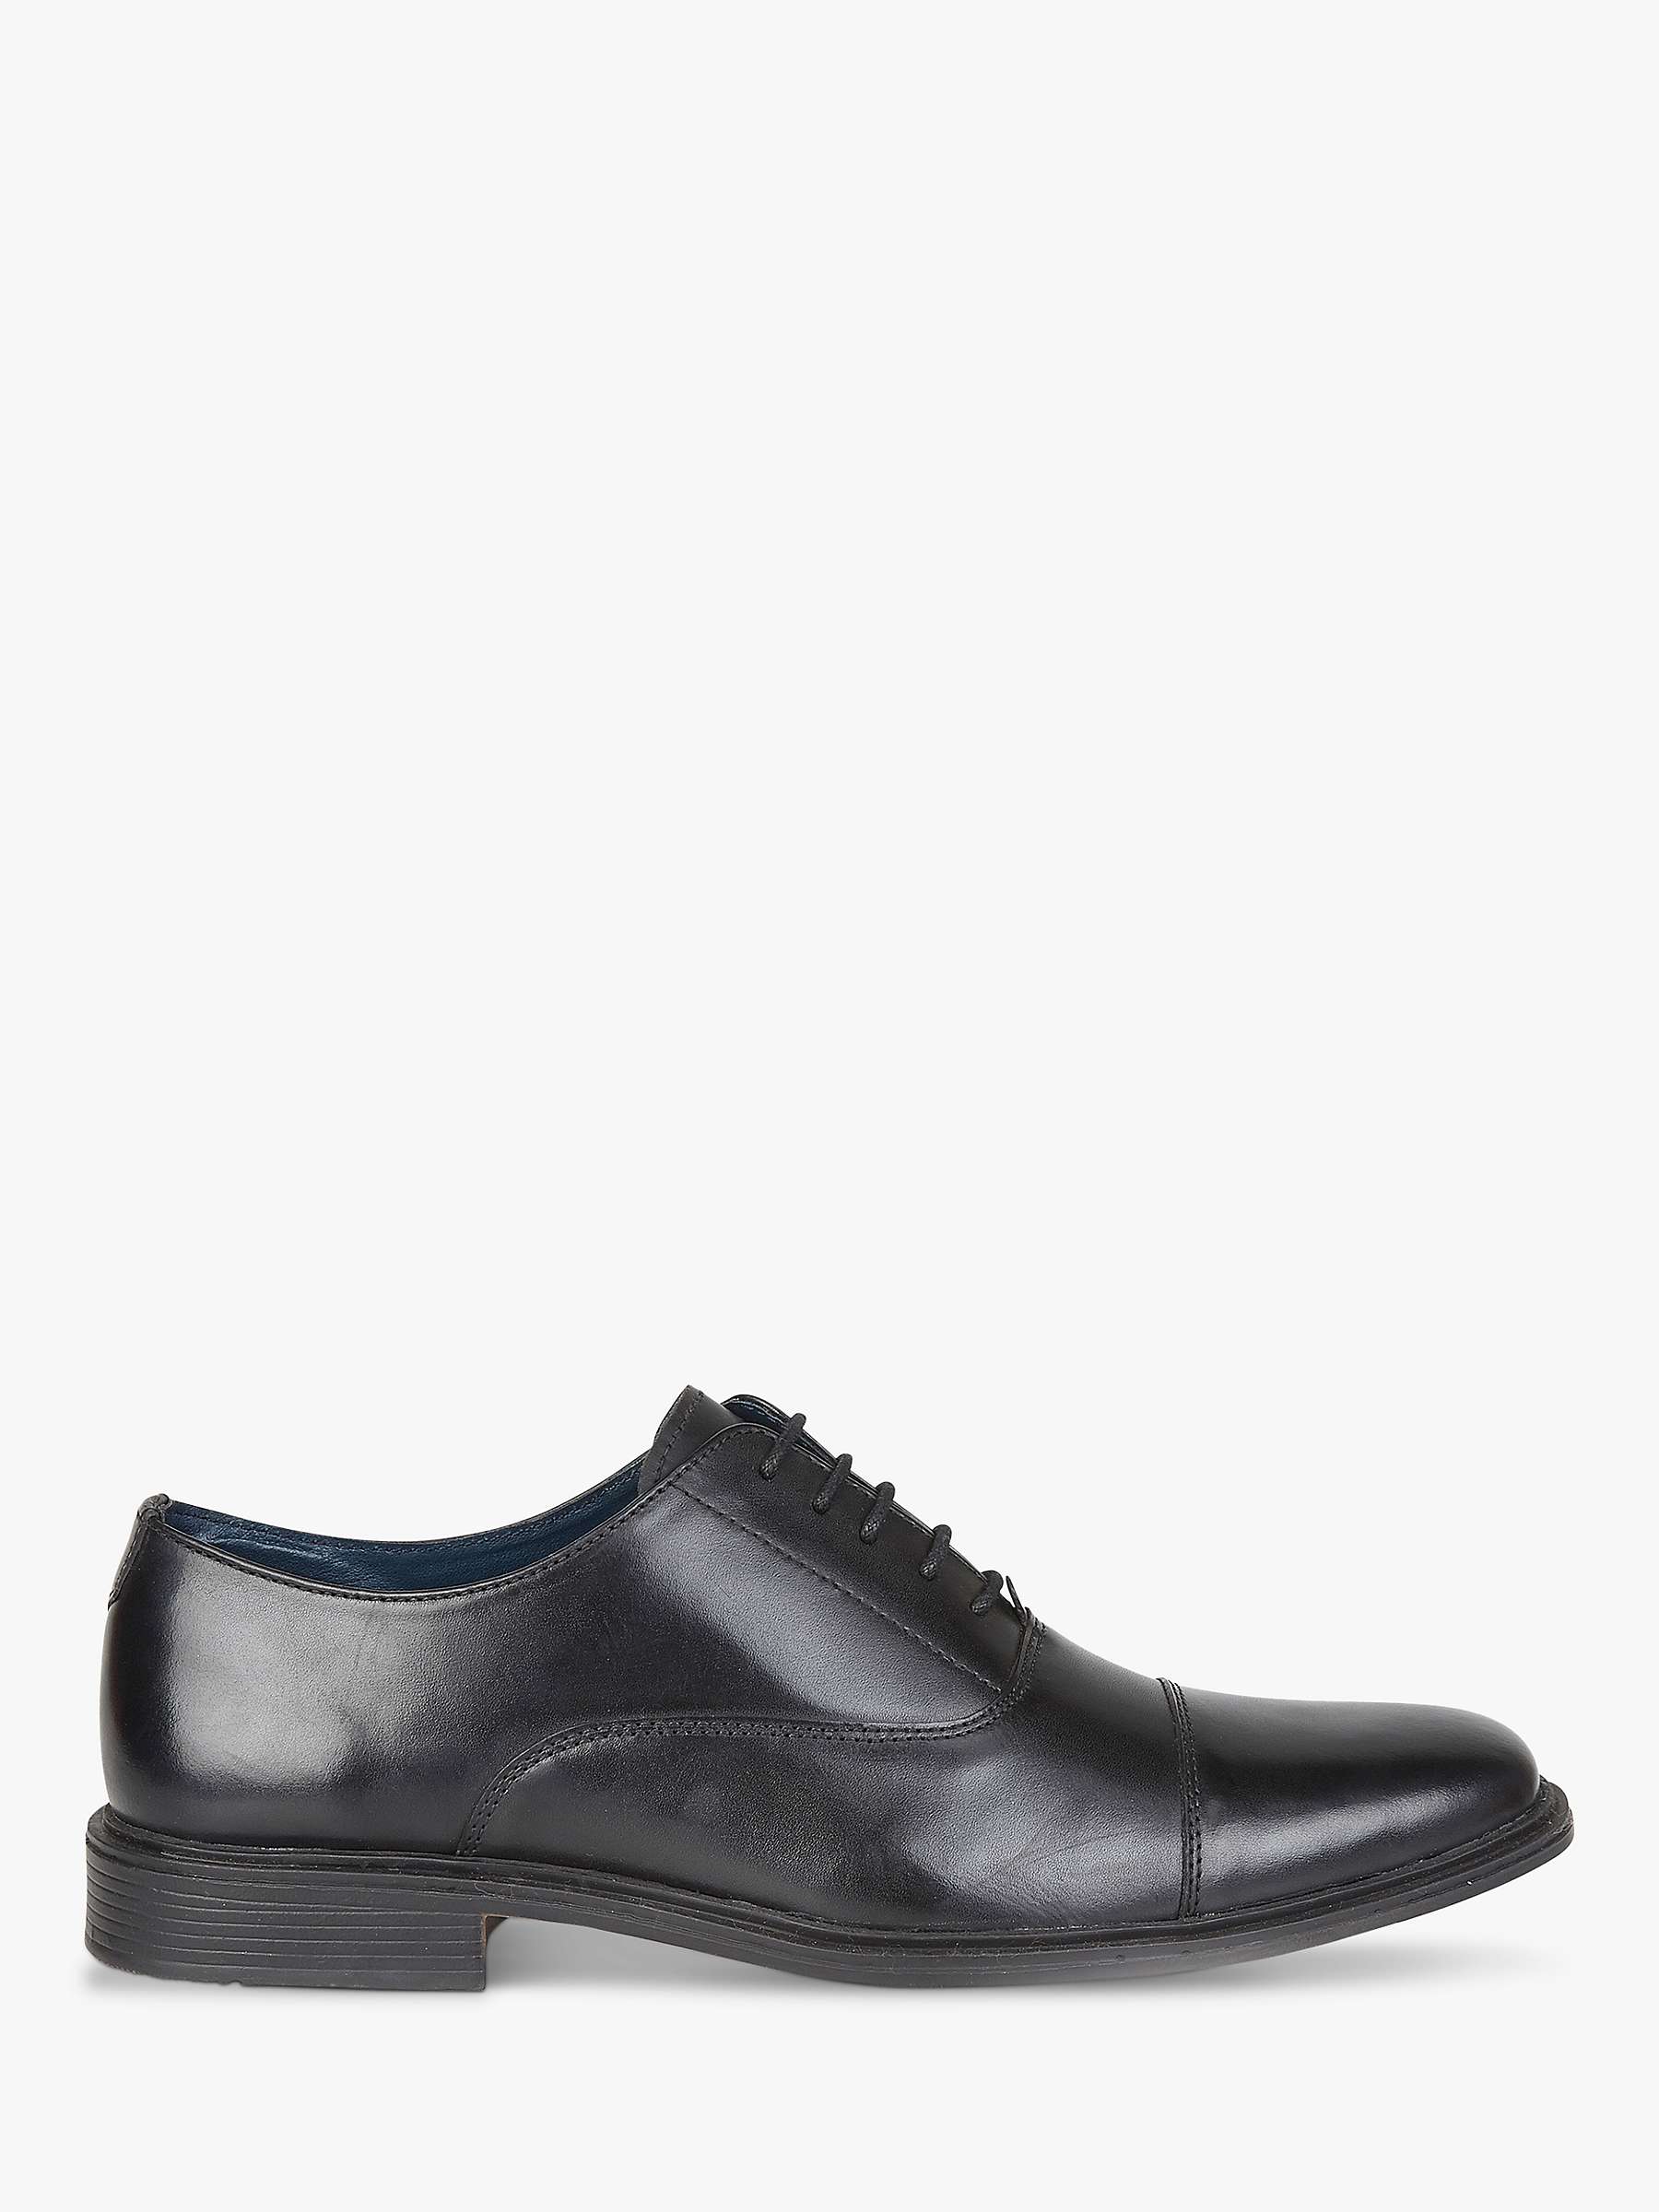 Buy Silver Street London Burford Formal Derby Shoes, Black Online at johnlewis.com